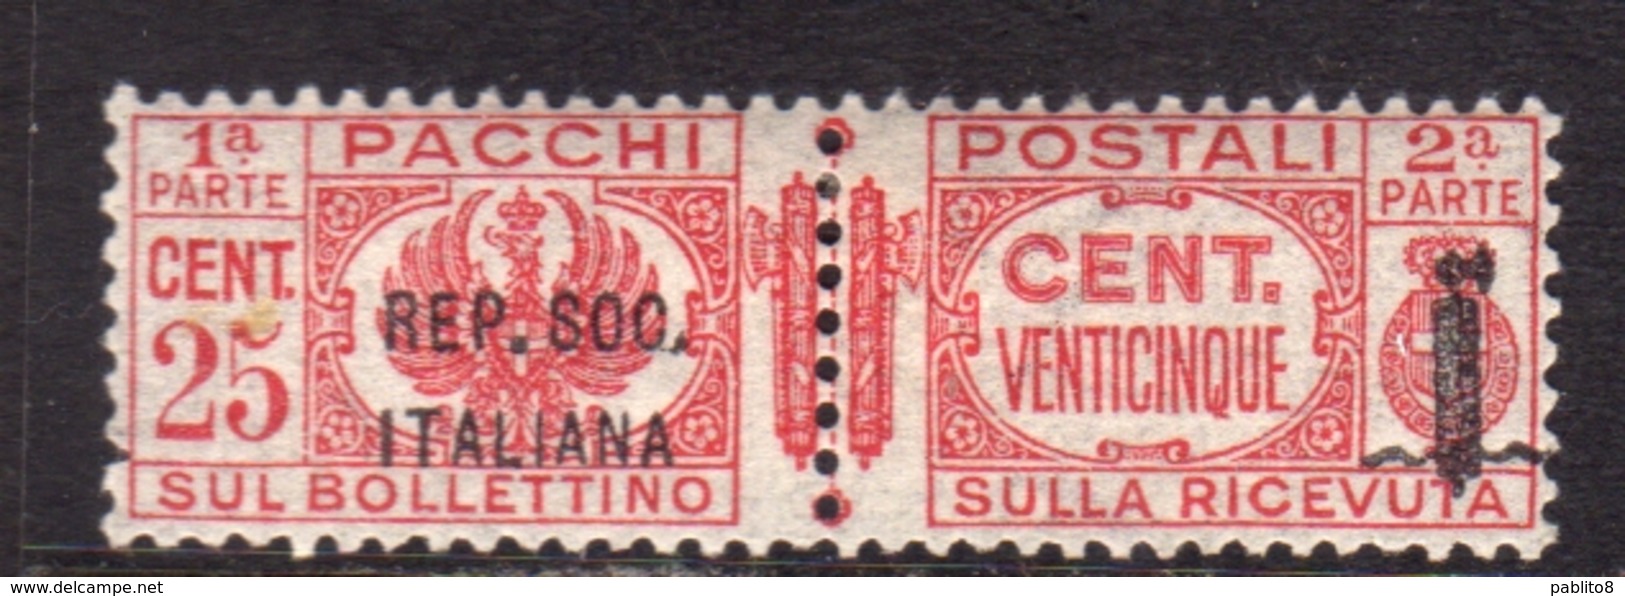 ITALIA REGNO ITALY KINGDOM 1944 RSI REPUBBLICA SOCIALE ITALIANA PACCHI POSTALI PARCEL POST FASCIO CENT. 25c MNH - Pacchi Postali